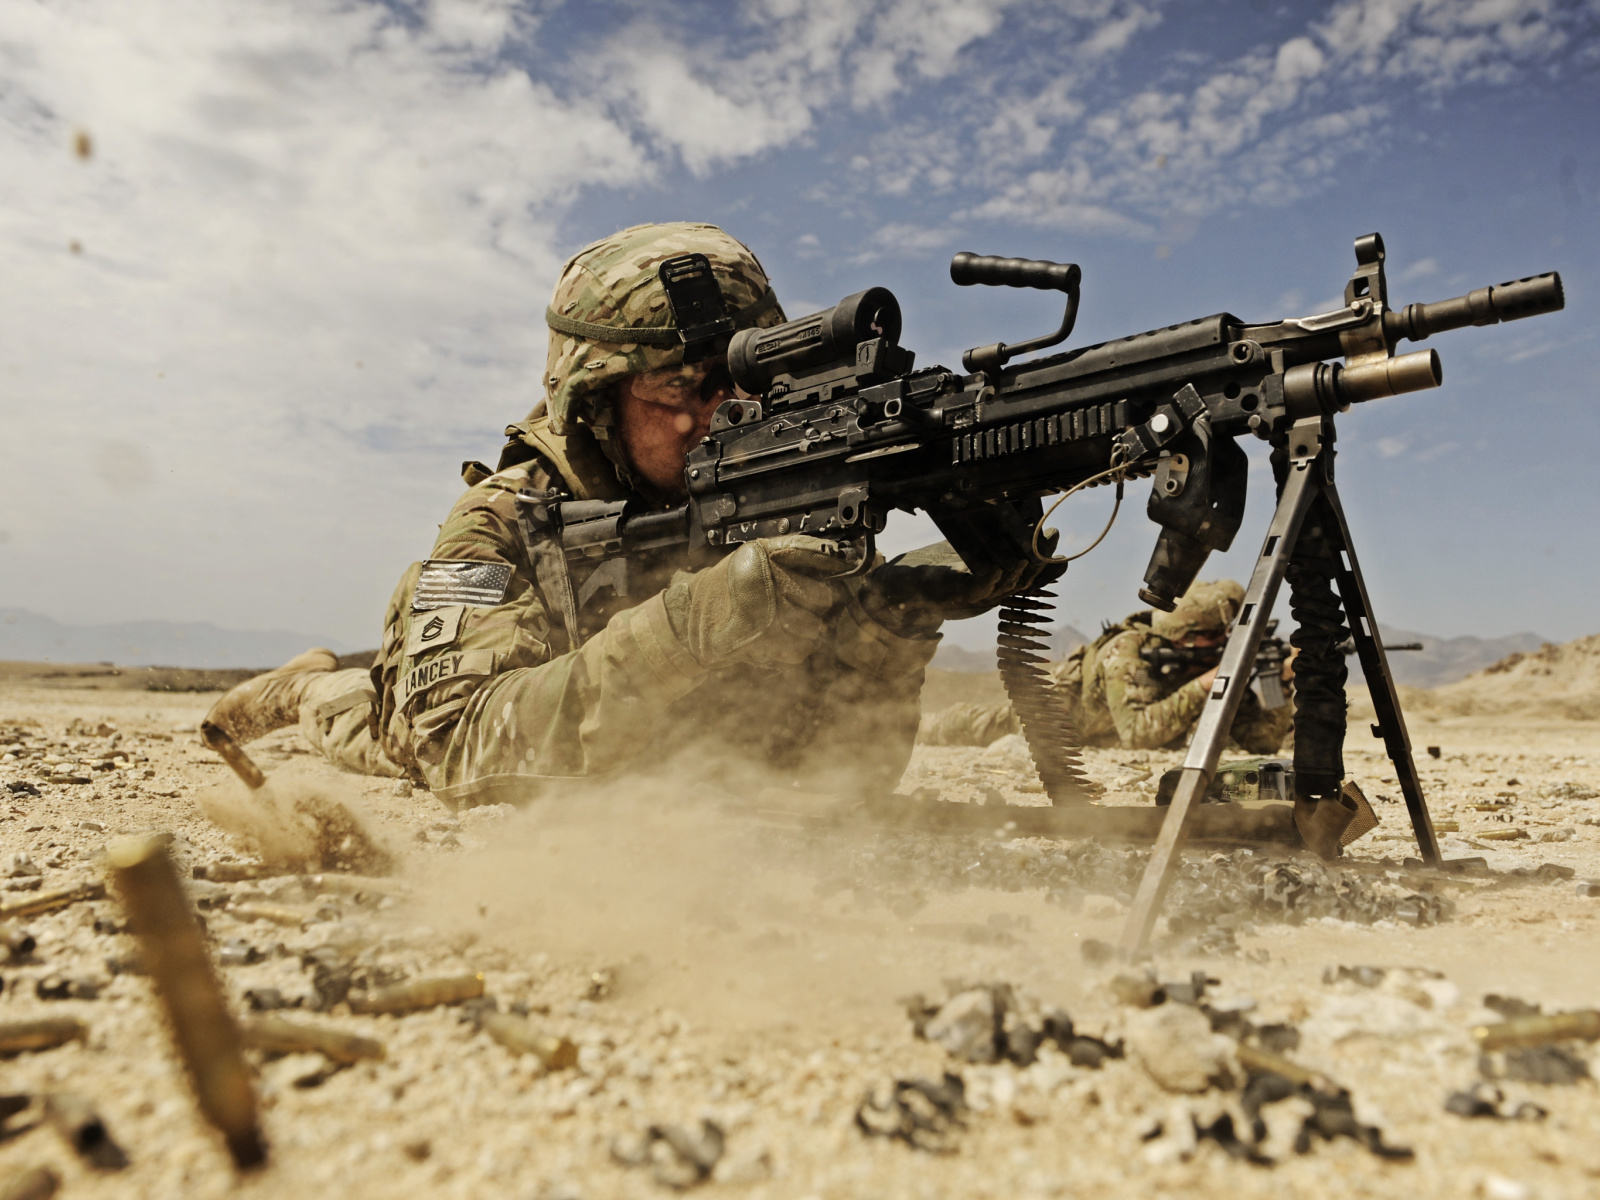 Das Soldier with M60 machine gun Wallpaper 1600x1200